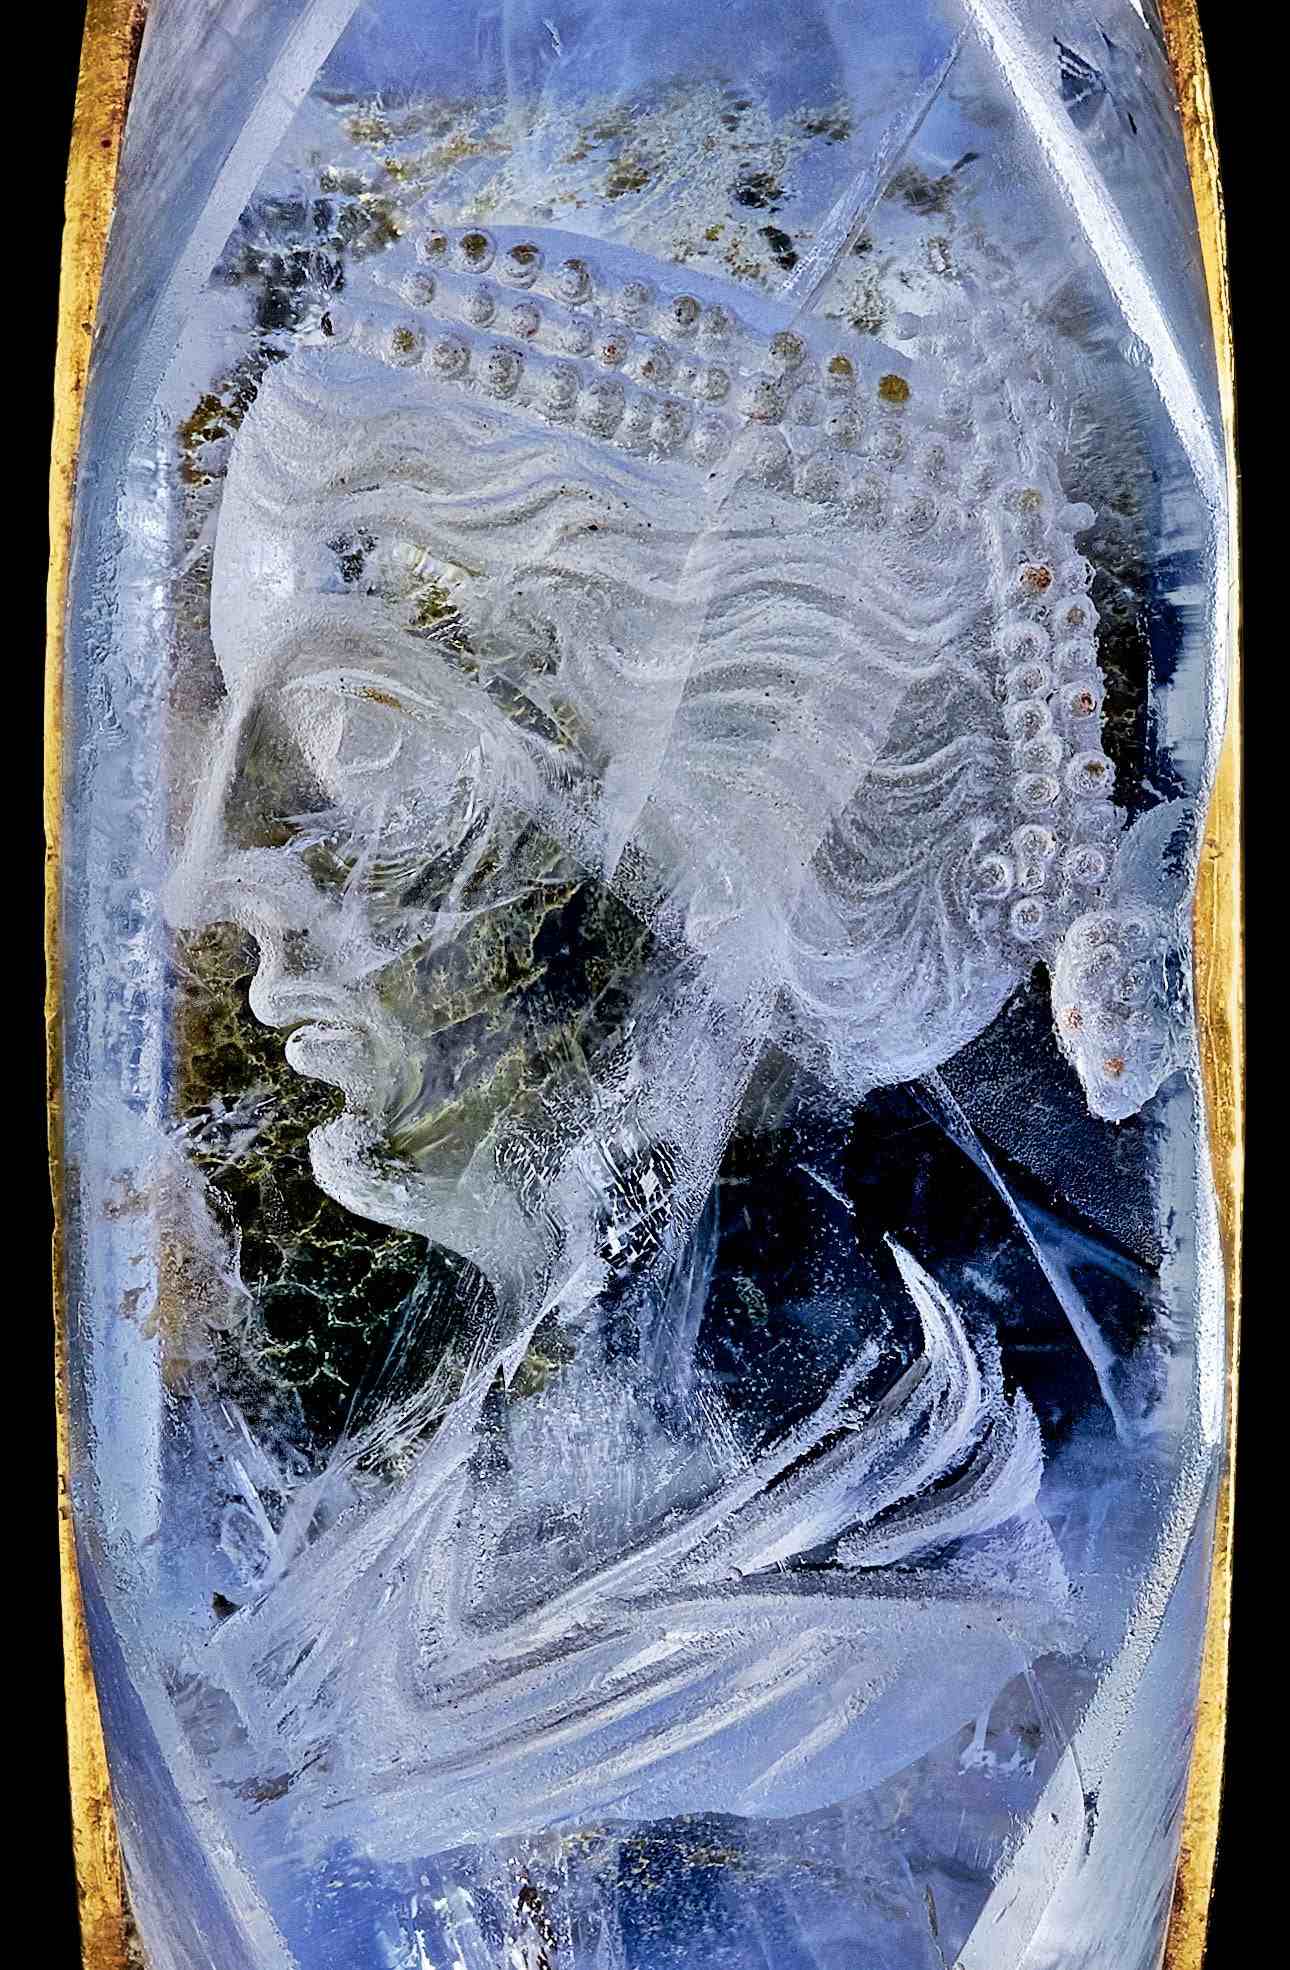 Цудоўны пярсцёнак Калігулы з сапфірам, якому 2,000 гадоў, распавядае пра драматычную гісторыю кахання 2